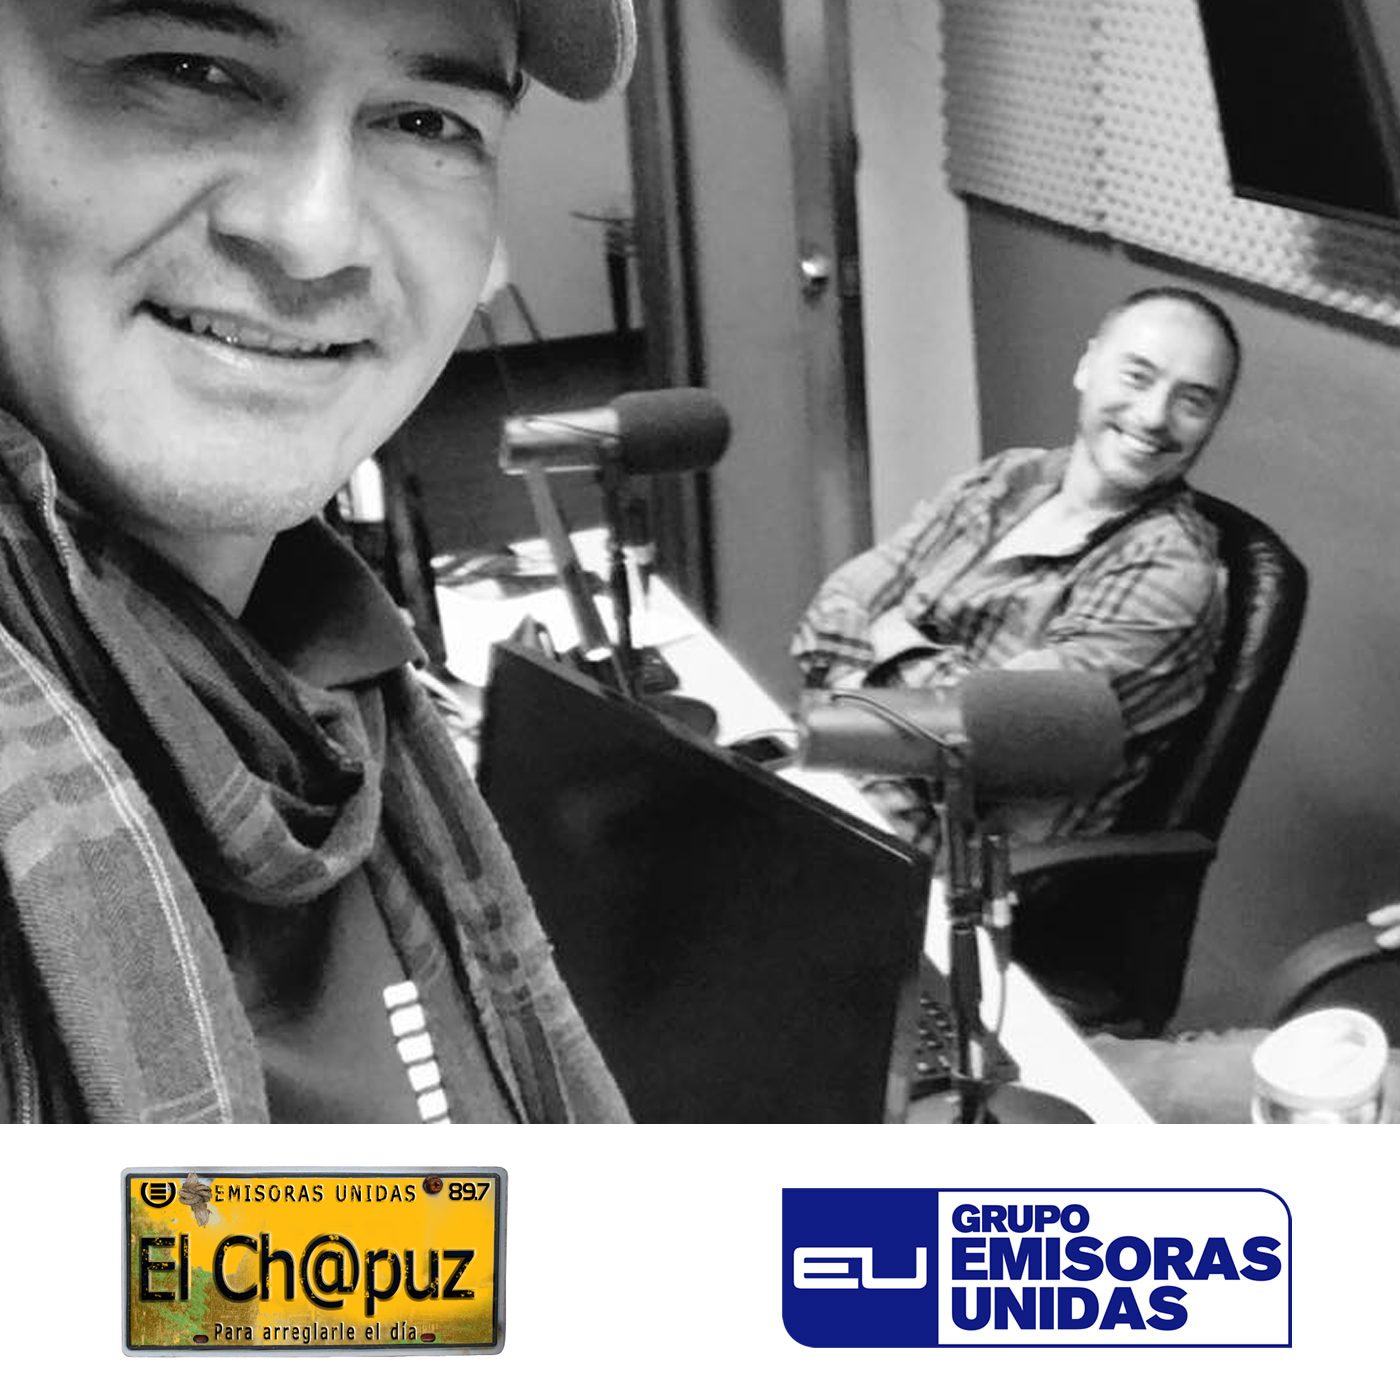 EC022 - El Chapuz - Emisoras unidas - #EnLosPaisesCivilizados